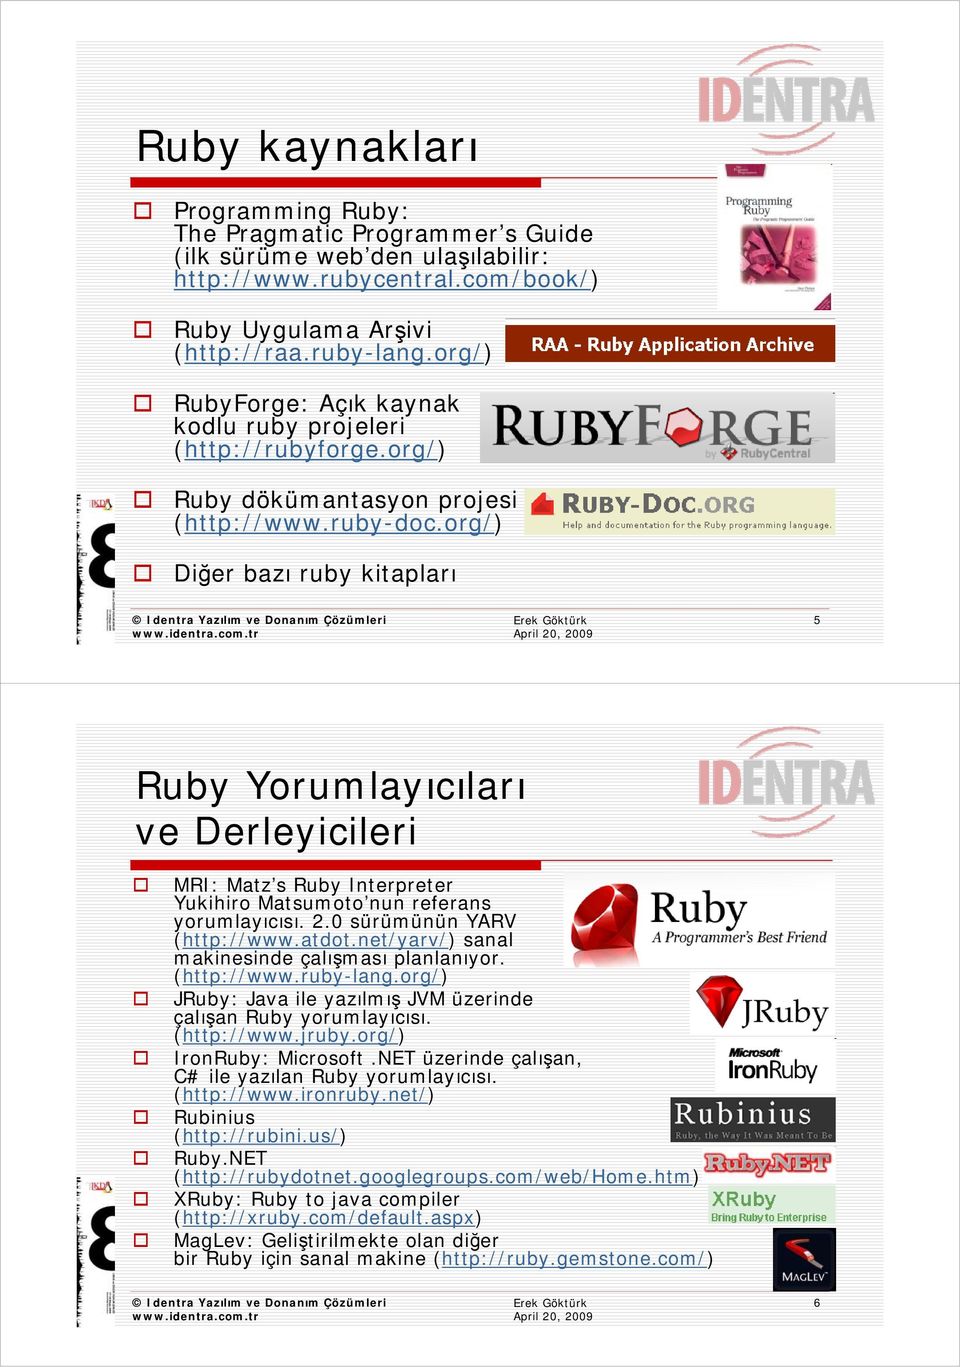 org/) Diğer bazı ruby kitapları 5 Ruby Yorumlayıcıları ve Derleyicileri MRI: Matz s Ruby Interpreter Yukihiro Matsumoto nun referans yorumlayıcısı. 2.0 sürümünün YARV (http://www.atdot.